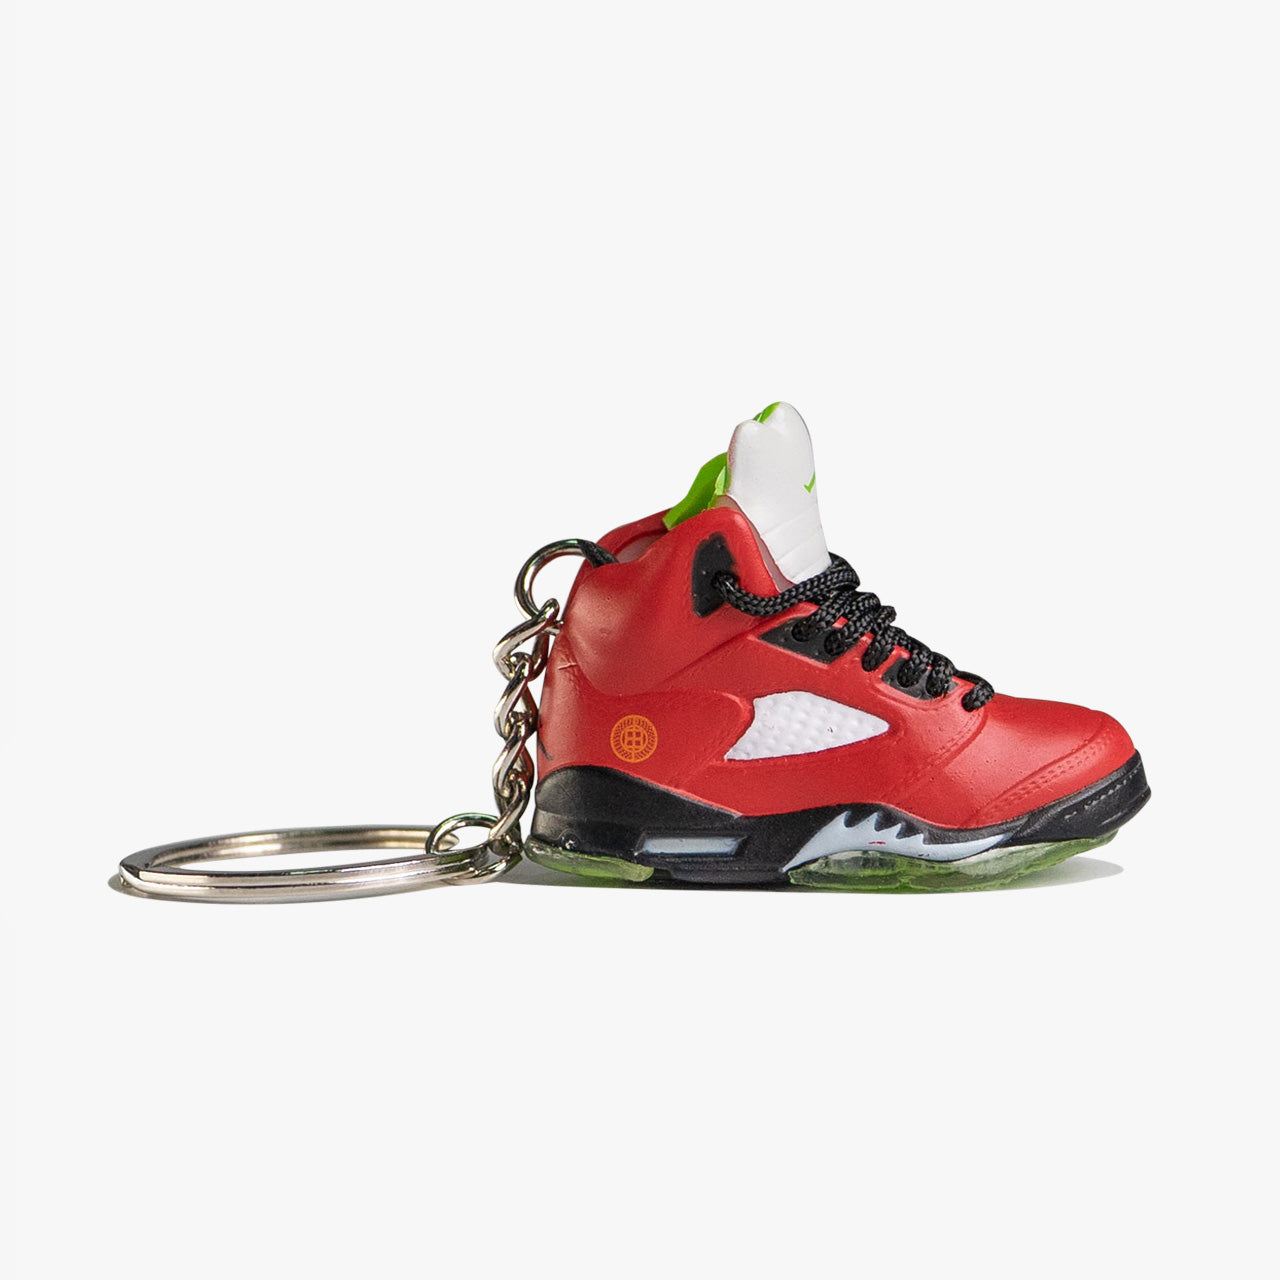 Breloc Air Jordan 5 " What The" Red